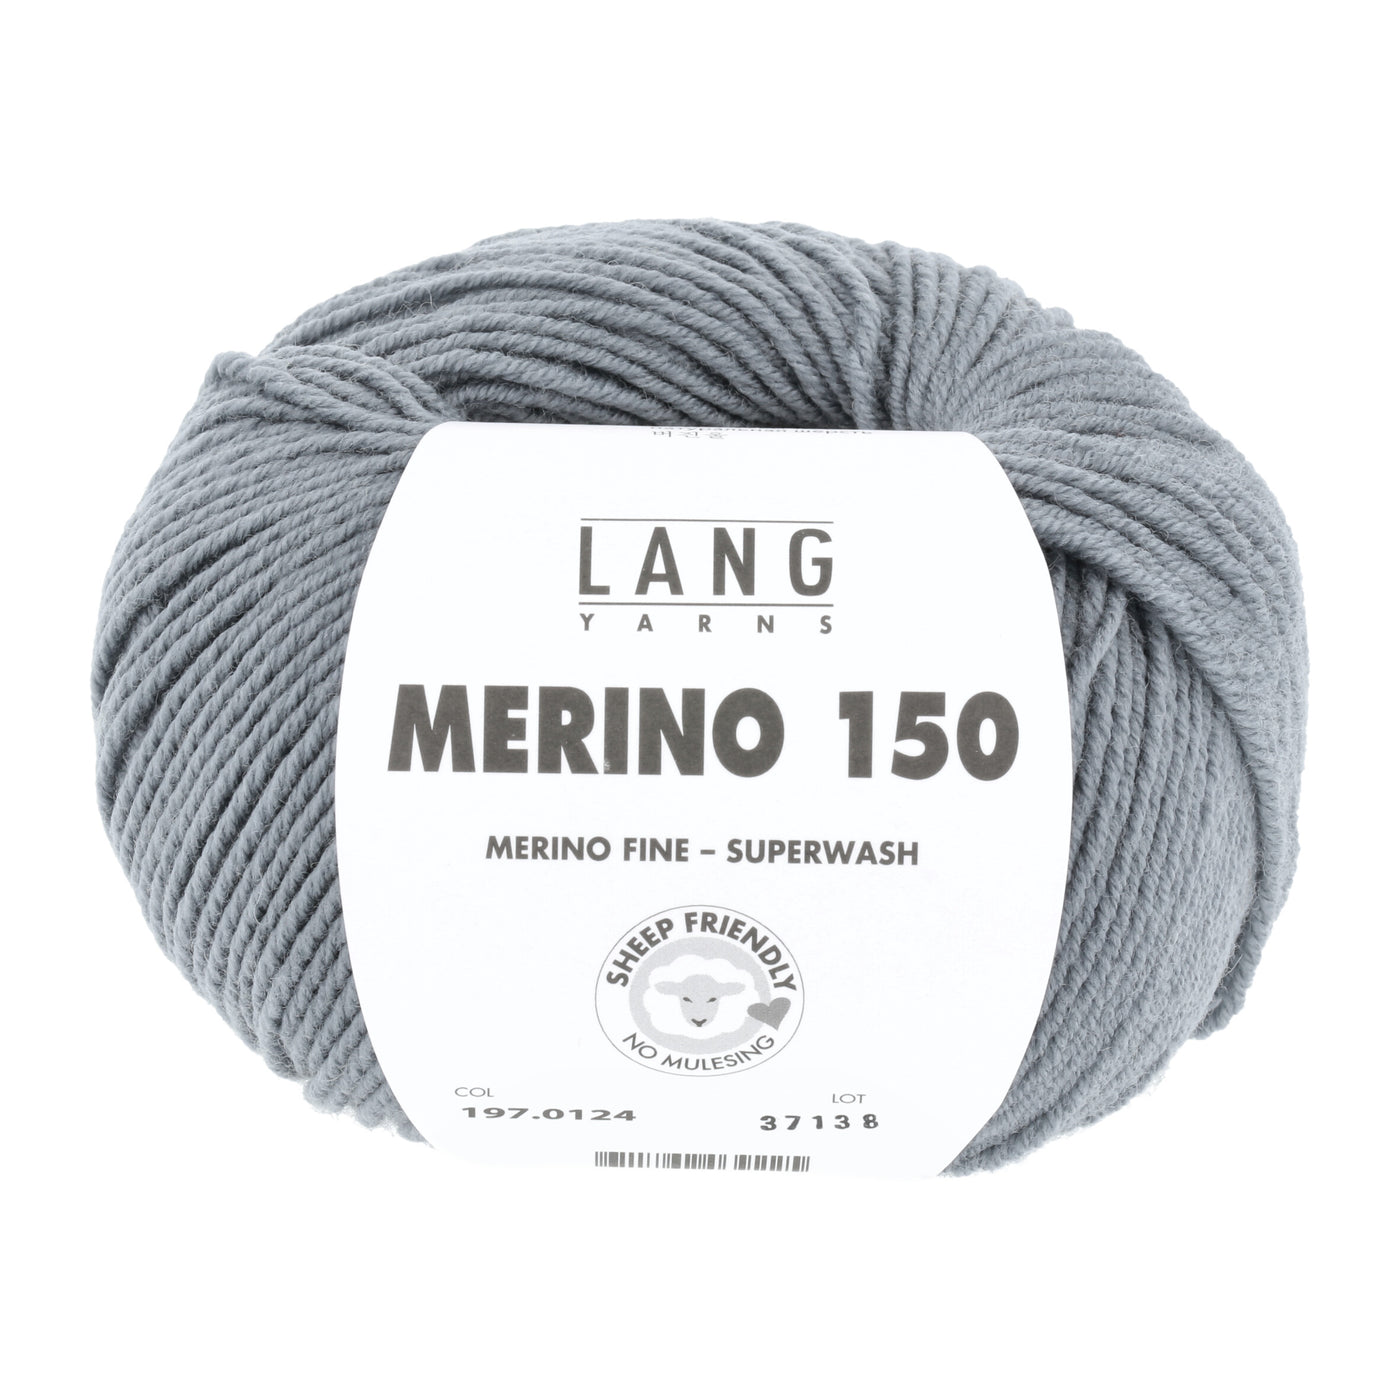 Lang Yarns Merino 150 muisgrijs 124